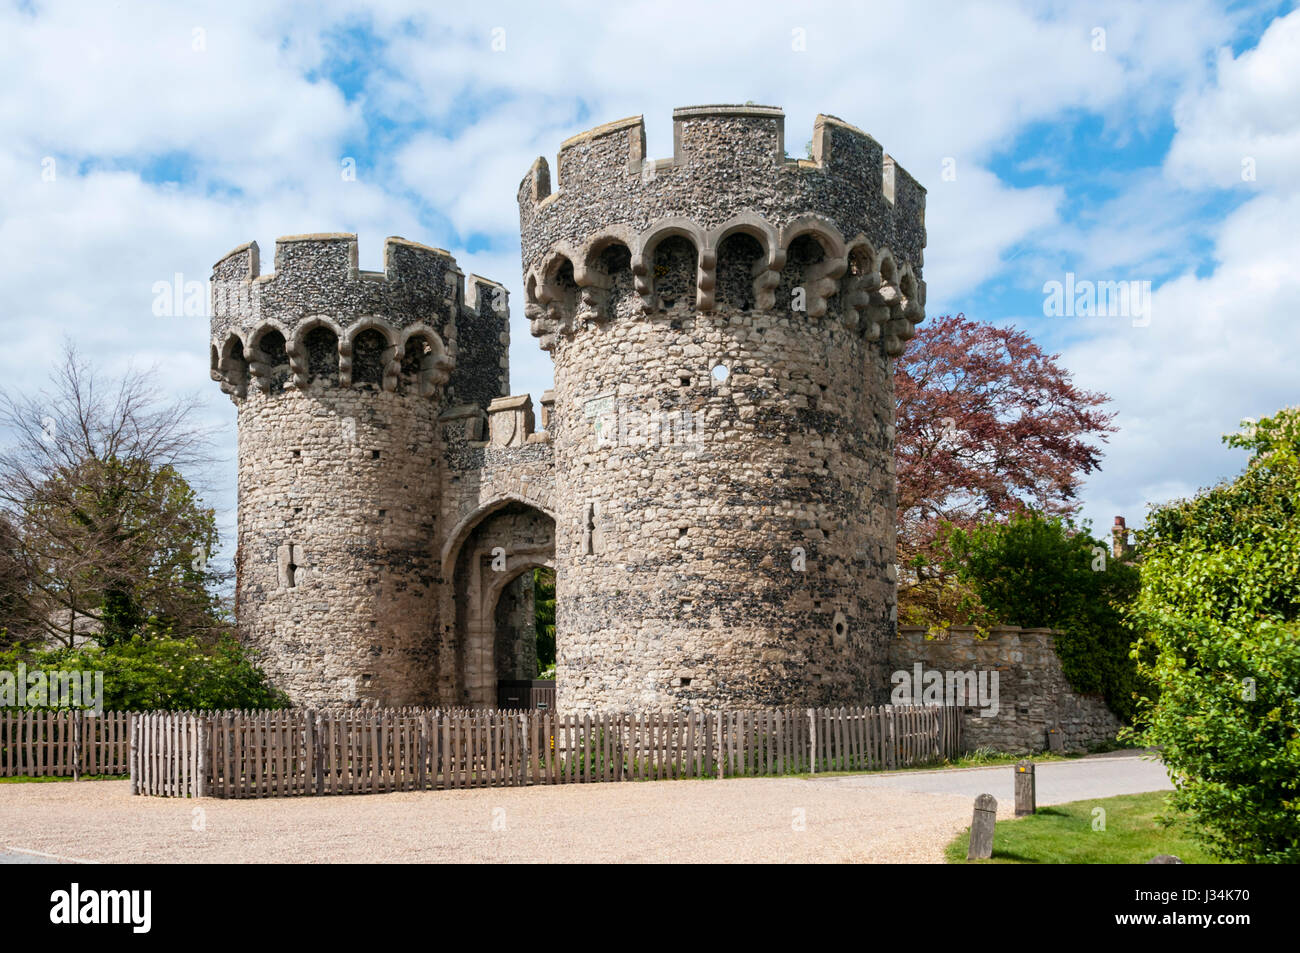 L'entrée de la cité médiévale ou médiévale Château de refroidissement sur la péninsule de Hoo dans le nord du Kent, en Angleterre. Banque D'Images